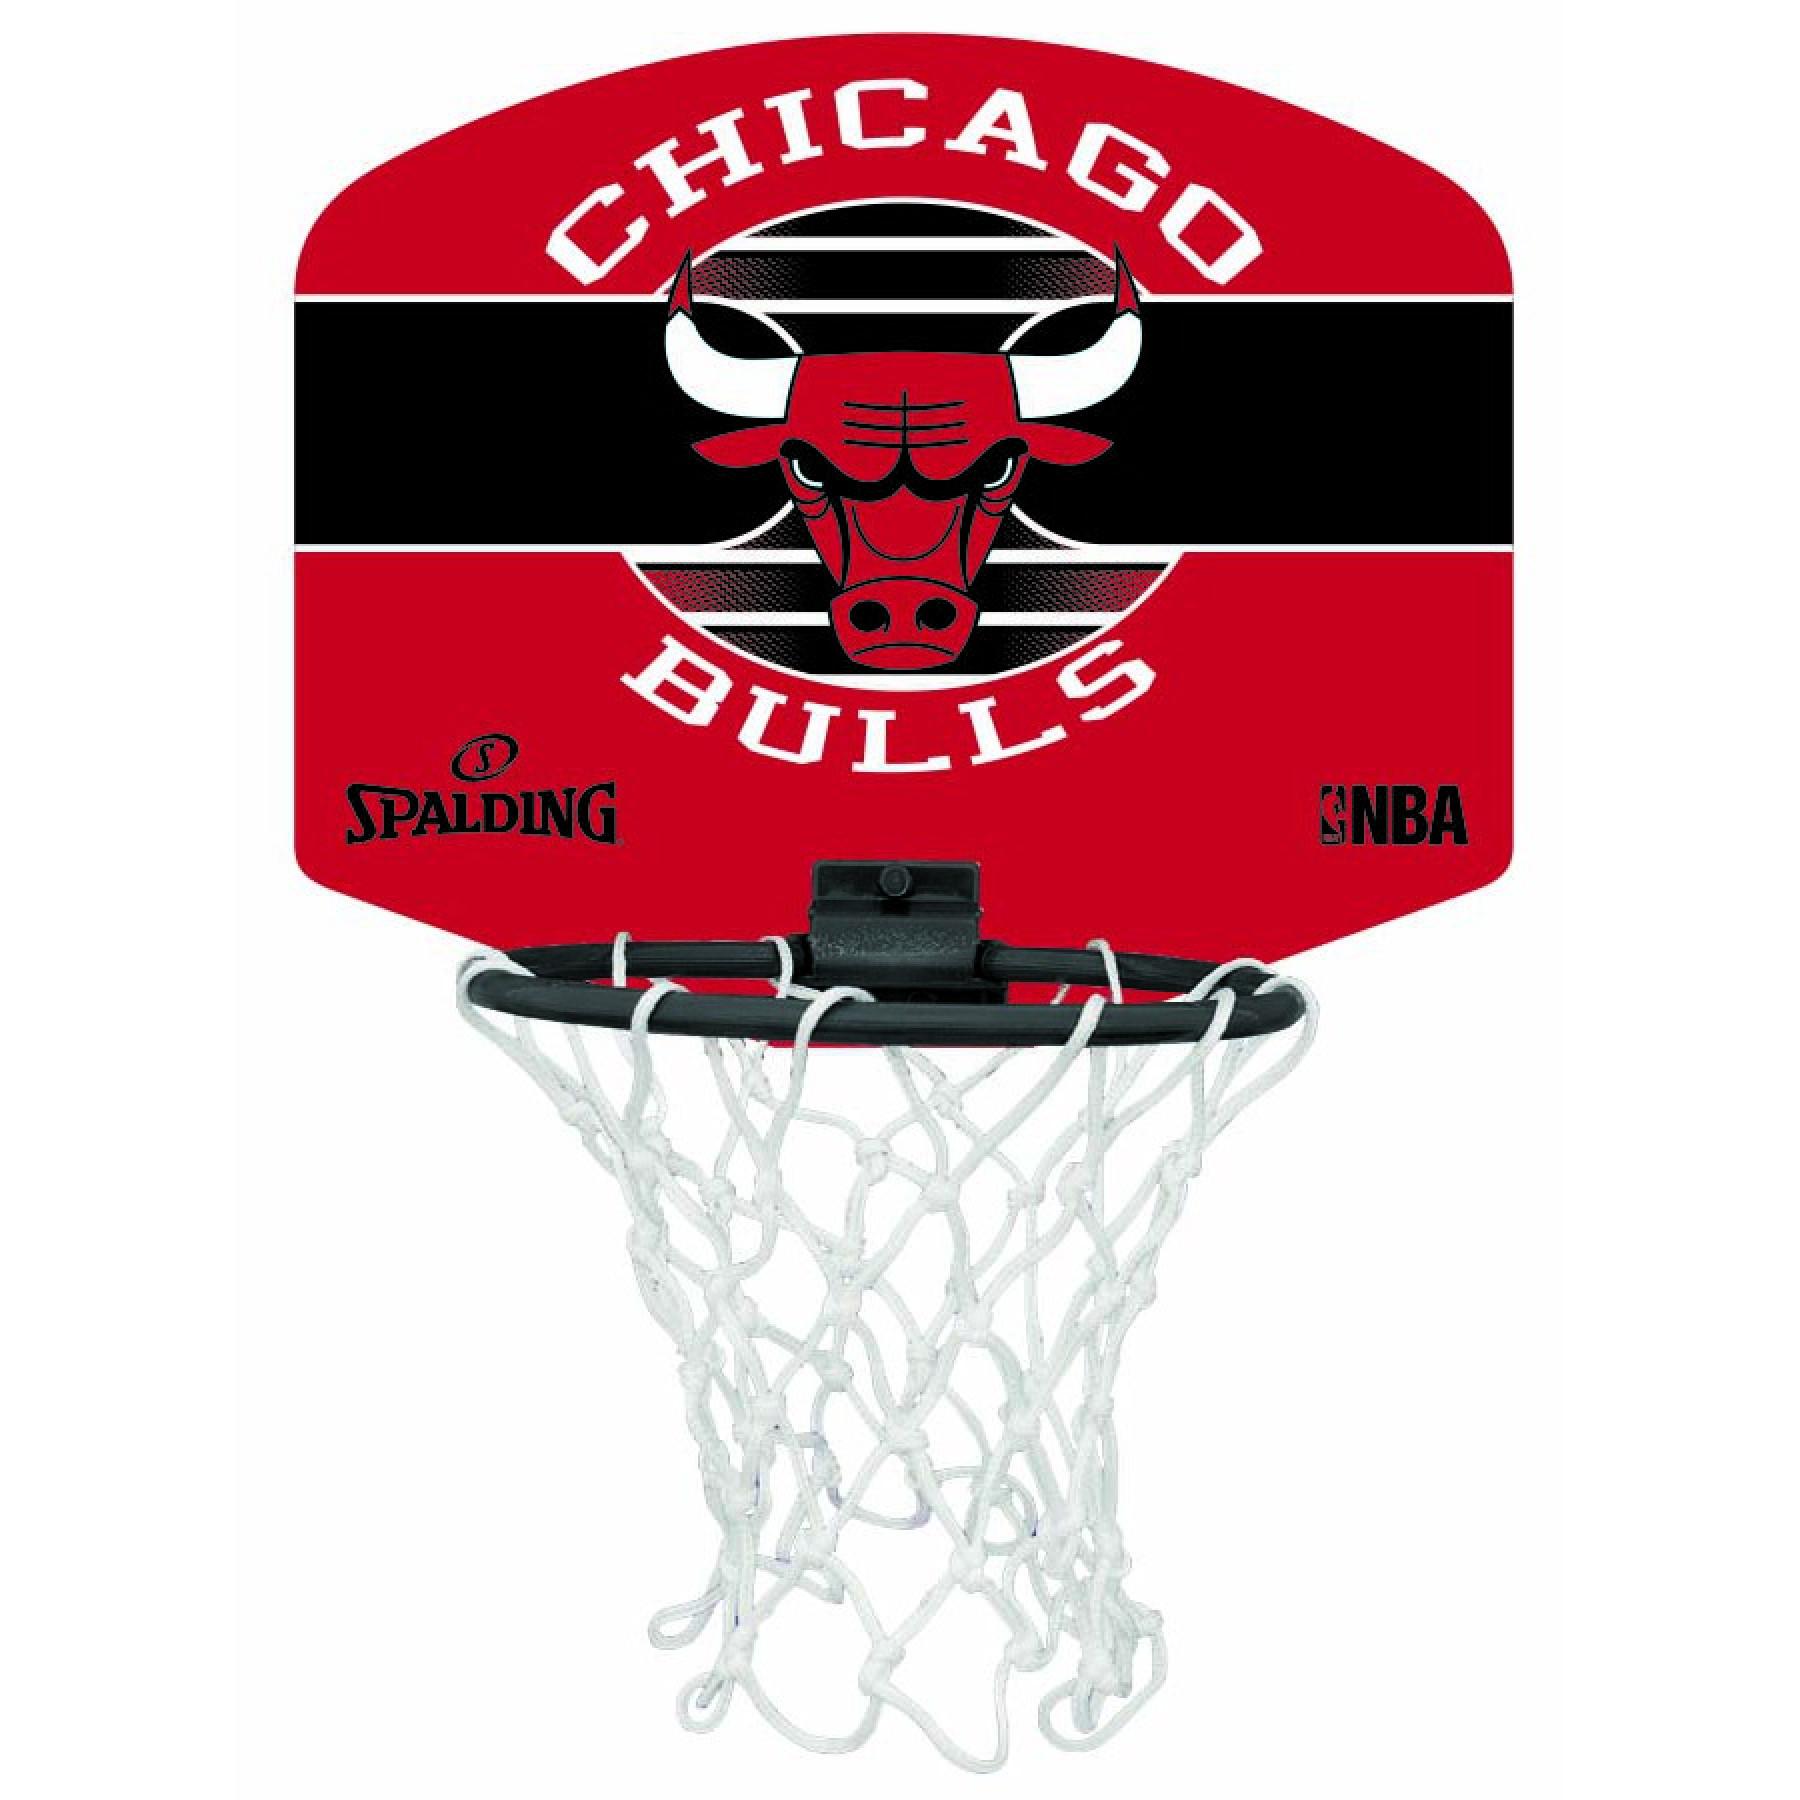 Mini cesta Spalding Chicago Bulls